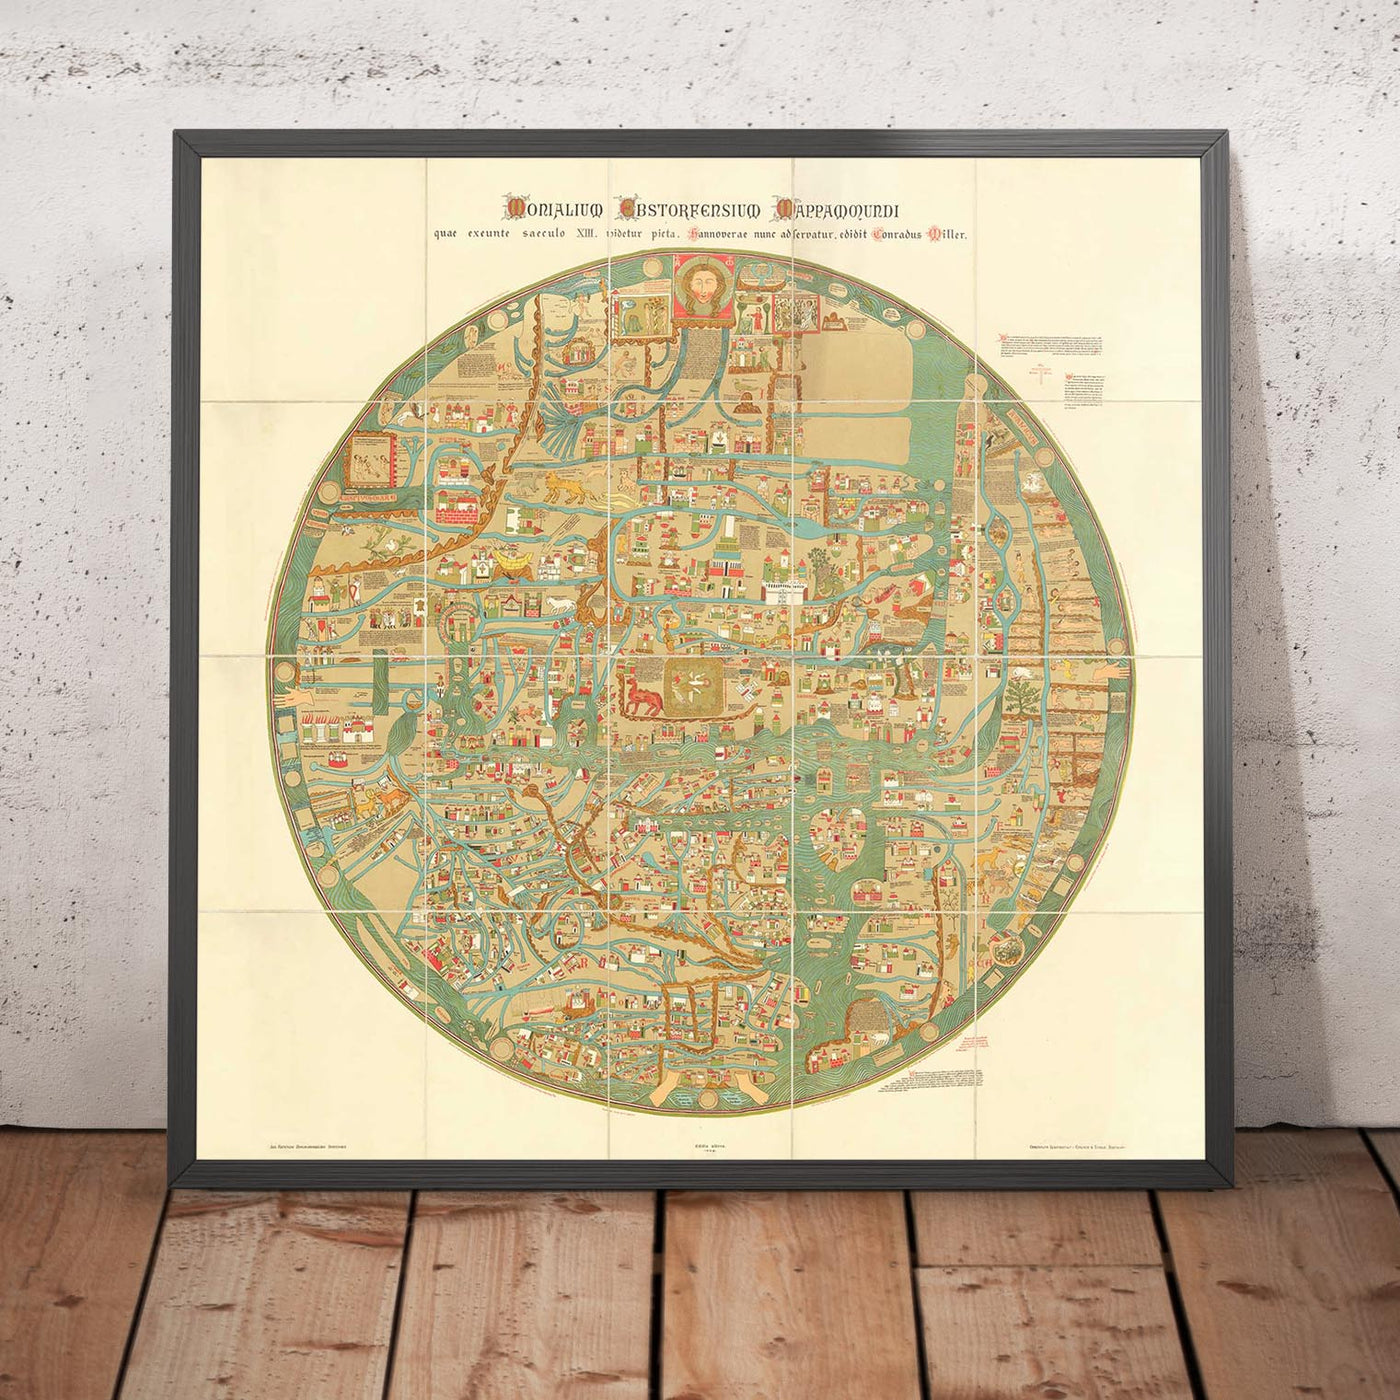 Old Ebstorf Mappa Mundi - Ancient 13th Century World Atlas - Gibraltar, Mediterranean, Jerusalem, Sicily, Greece